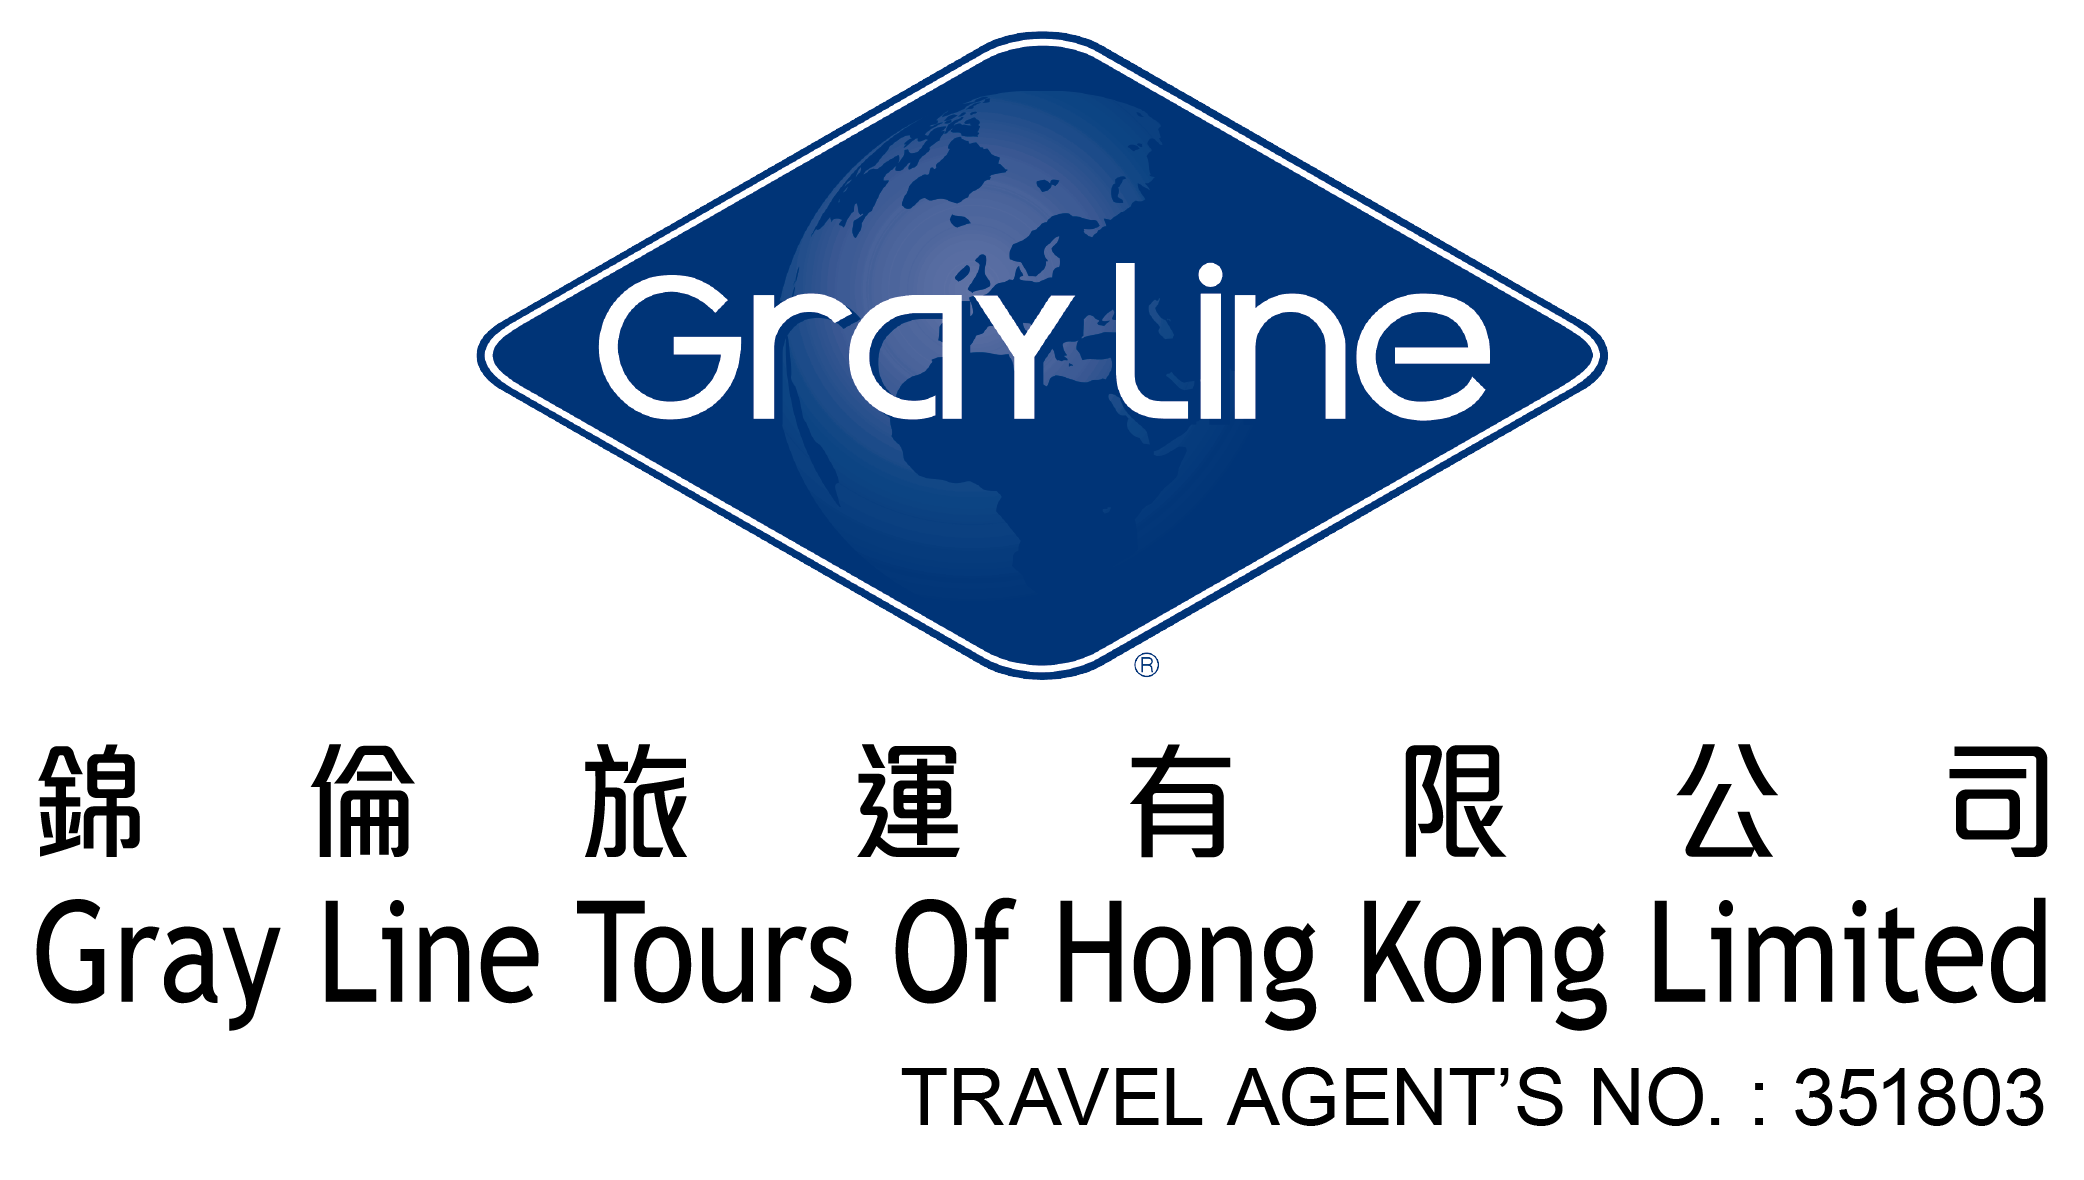 Gray Line Logo - Gray Line Tours | ContactUs